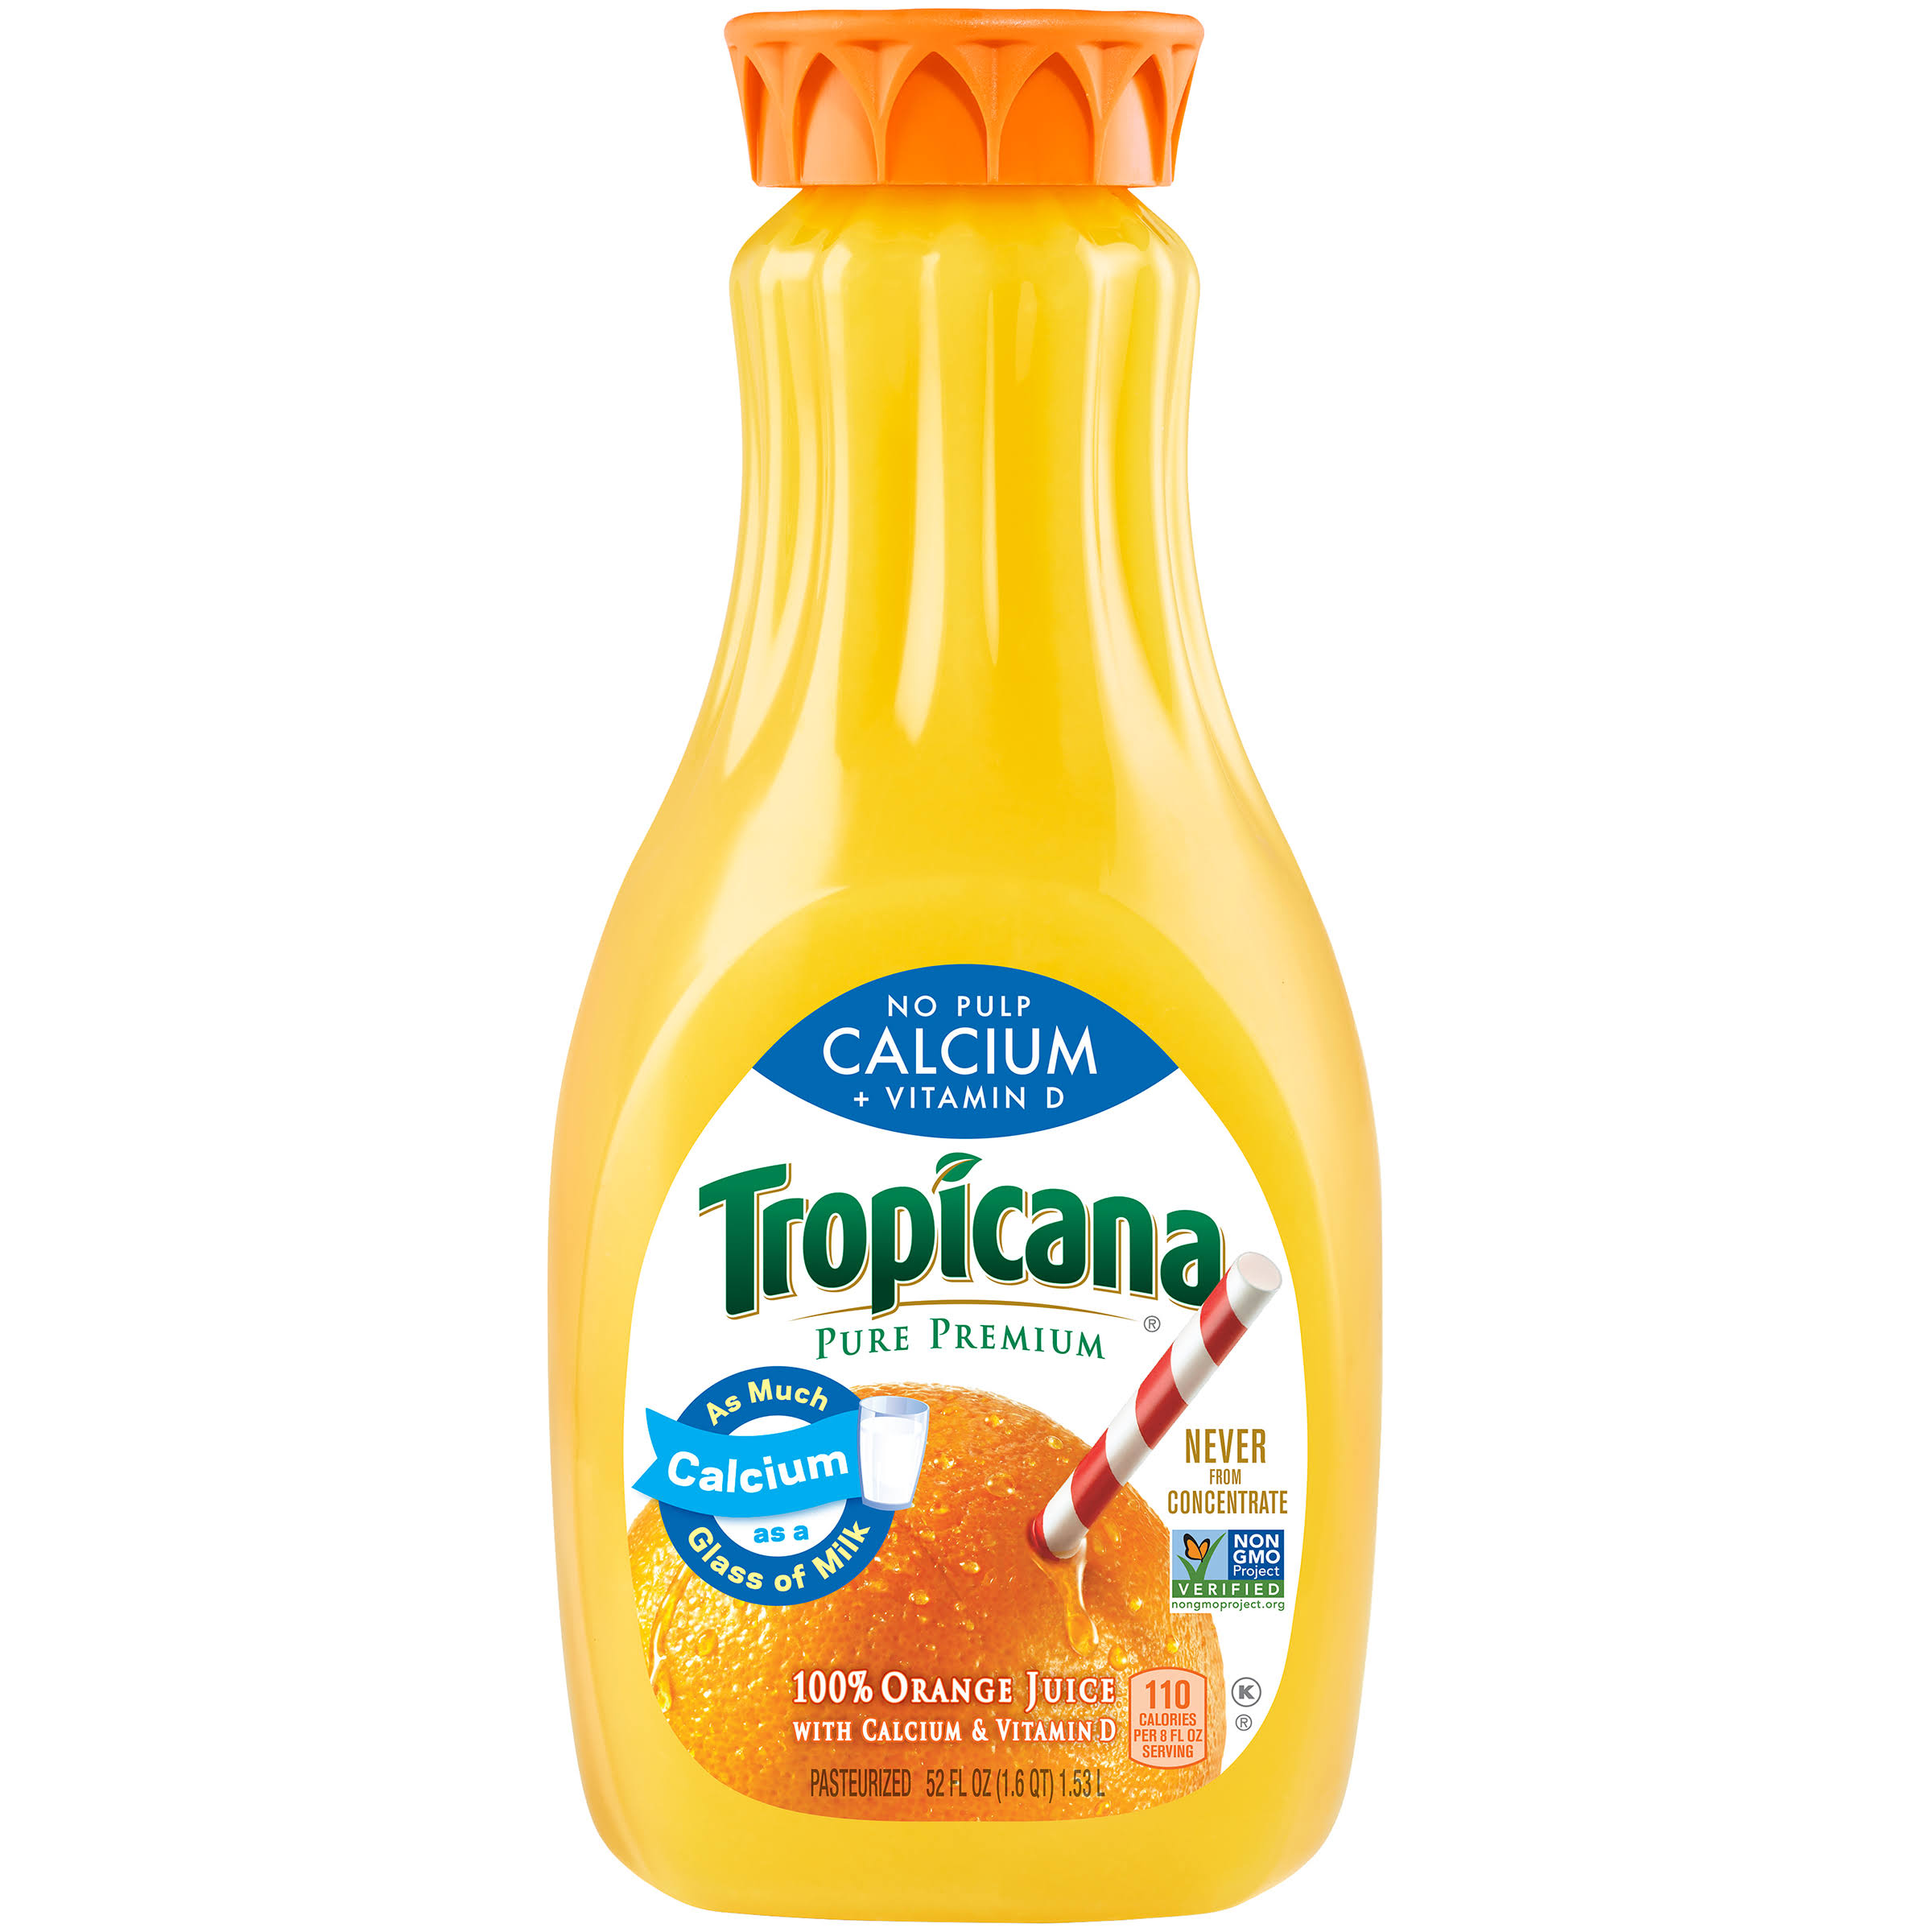 Tropicana Orange Juice, Calcium + Vitamin D, No Pulp - 52 fl oz